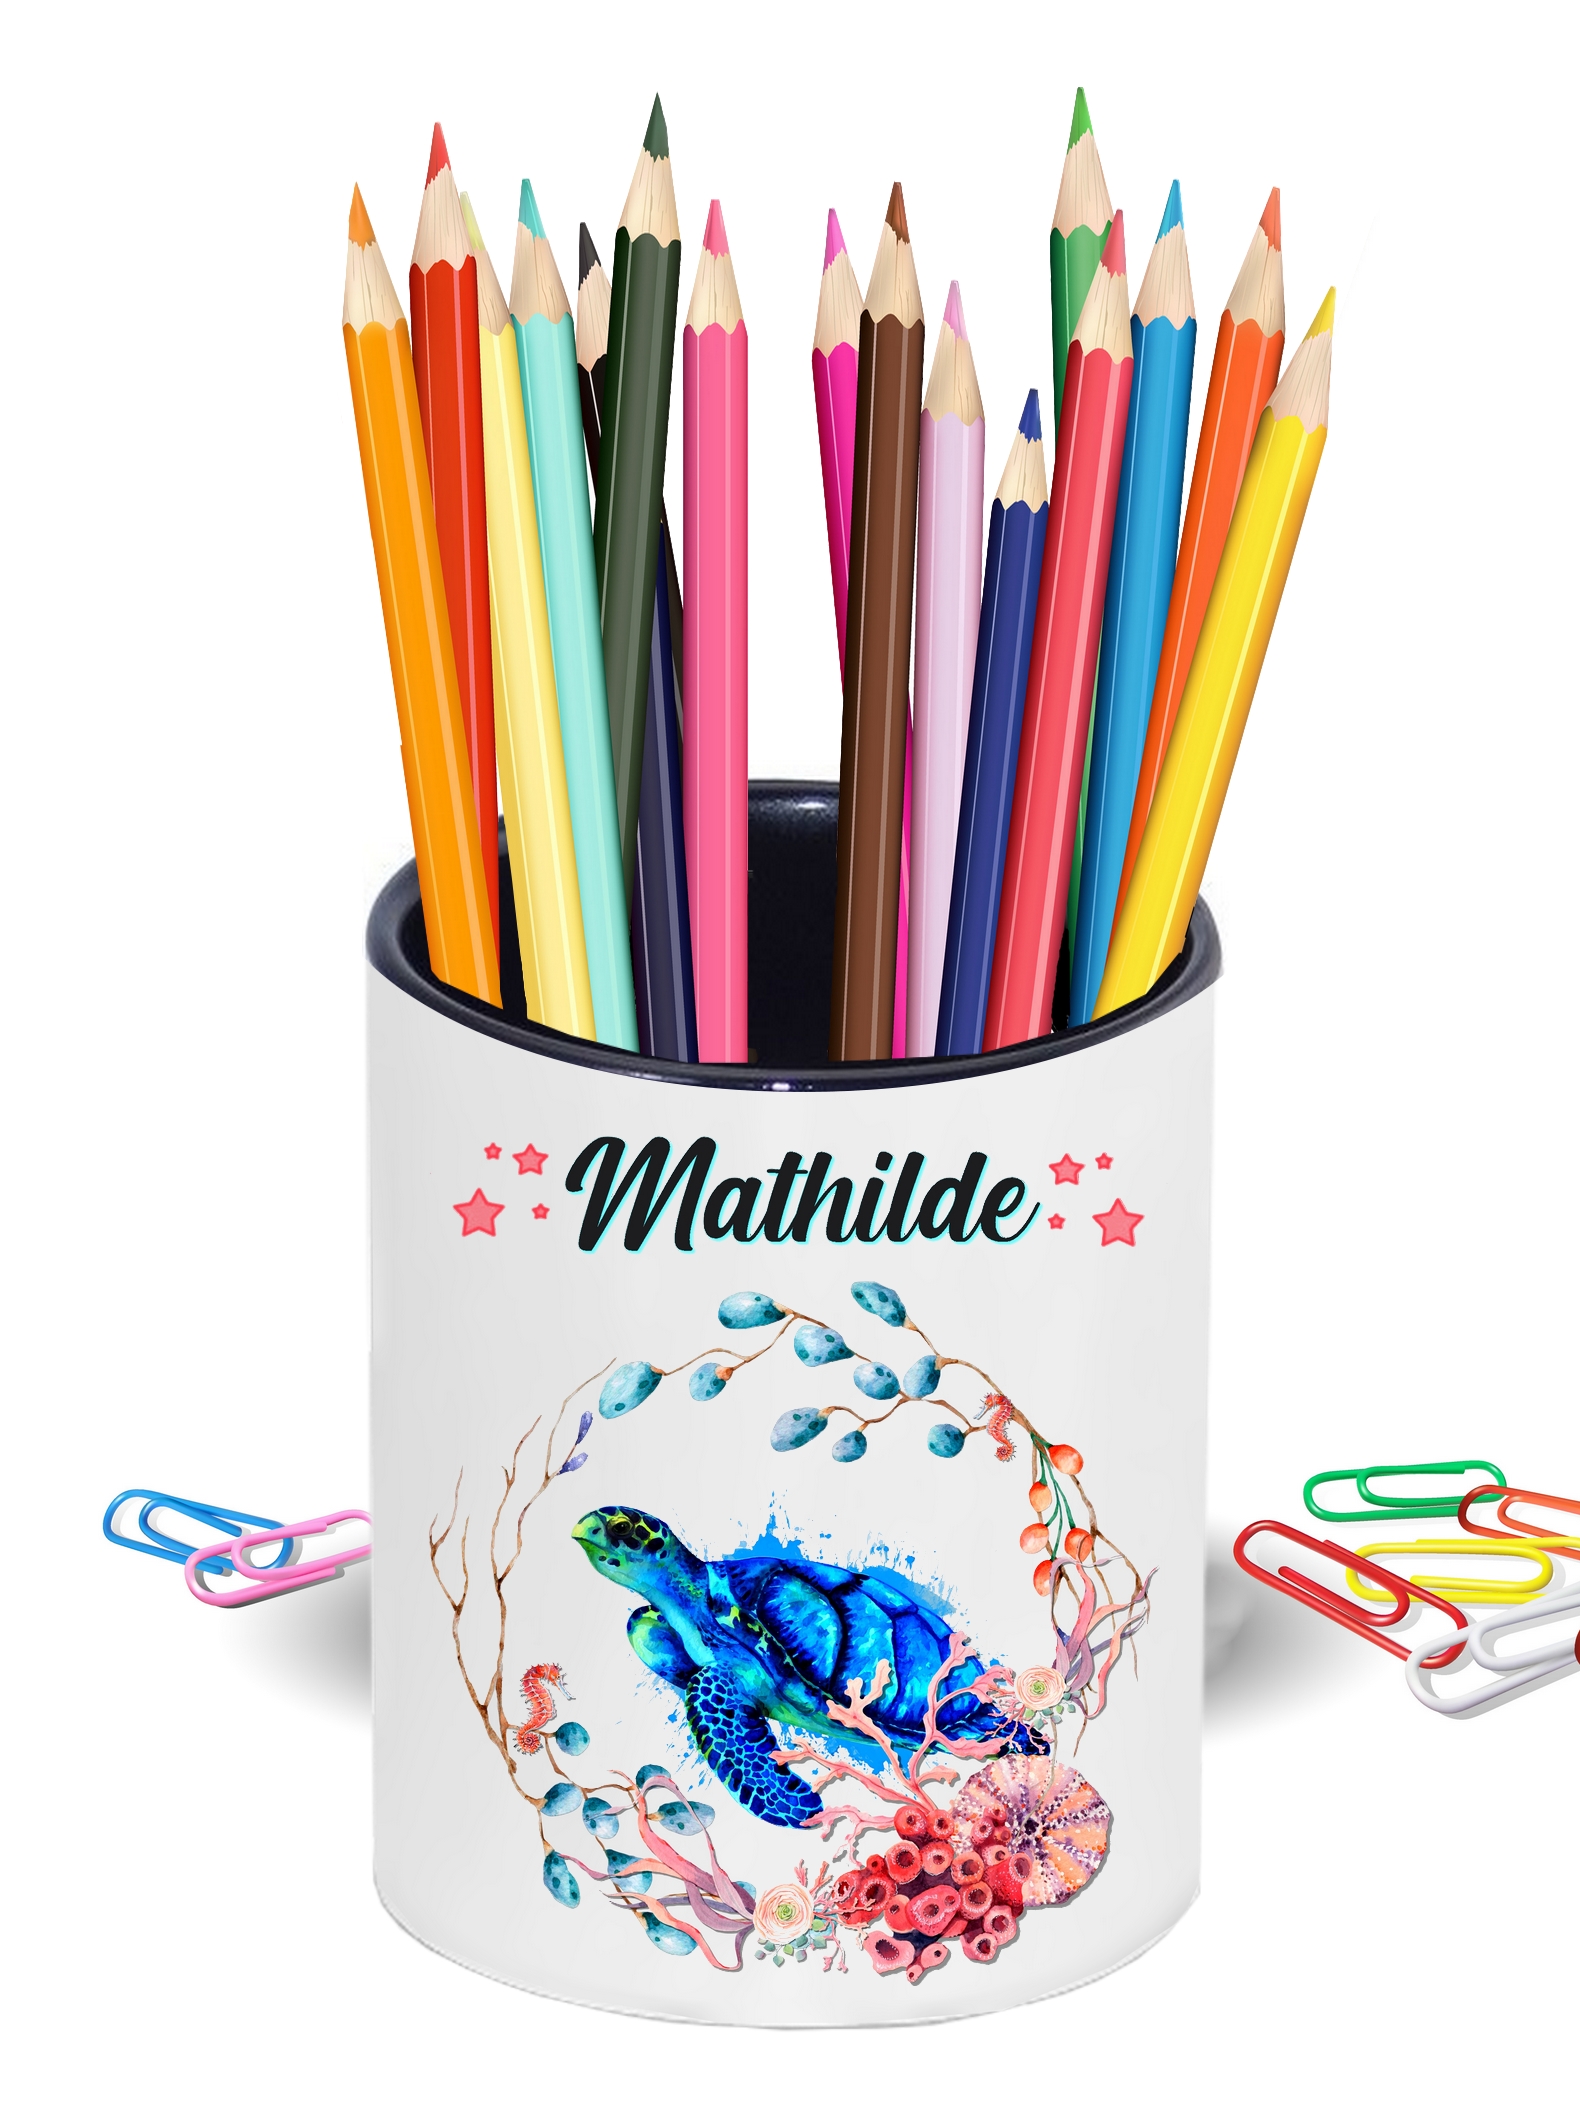 Etui De 4 Crayon De Couleur Personnalisé 'Mathilda